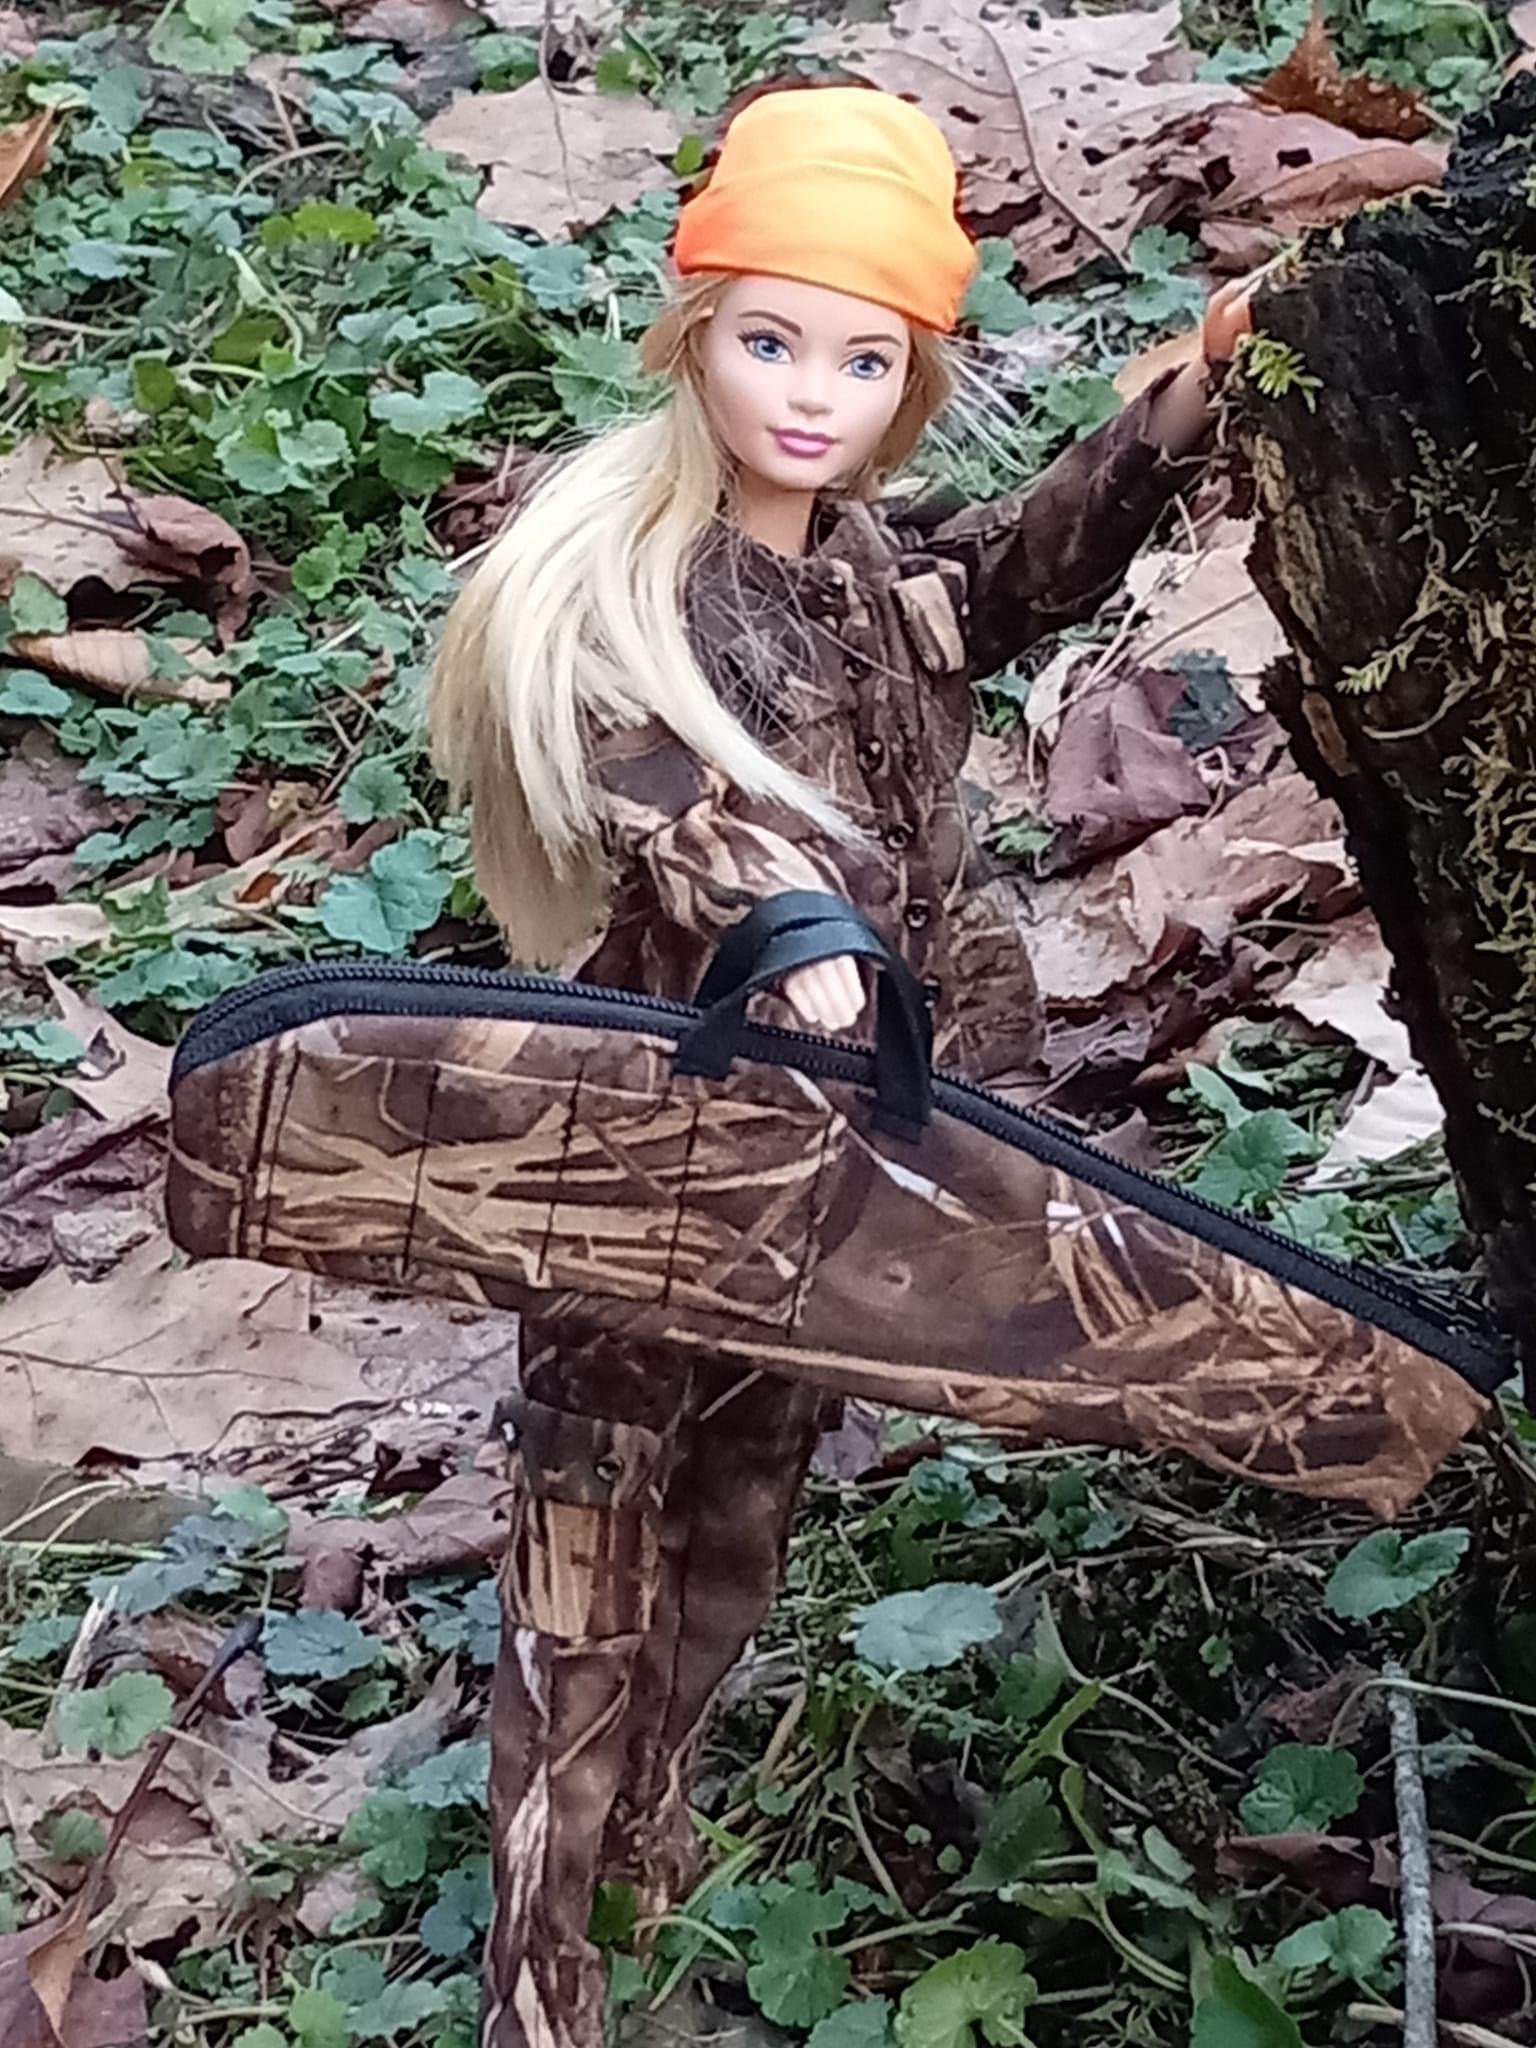 Barbie sportsman real tree game deer season hunting (doll not included)